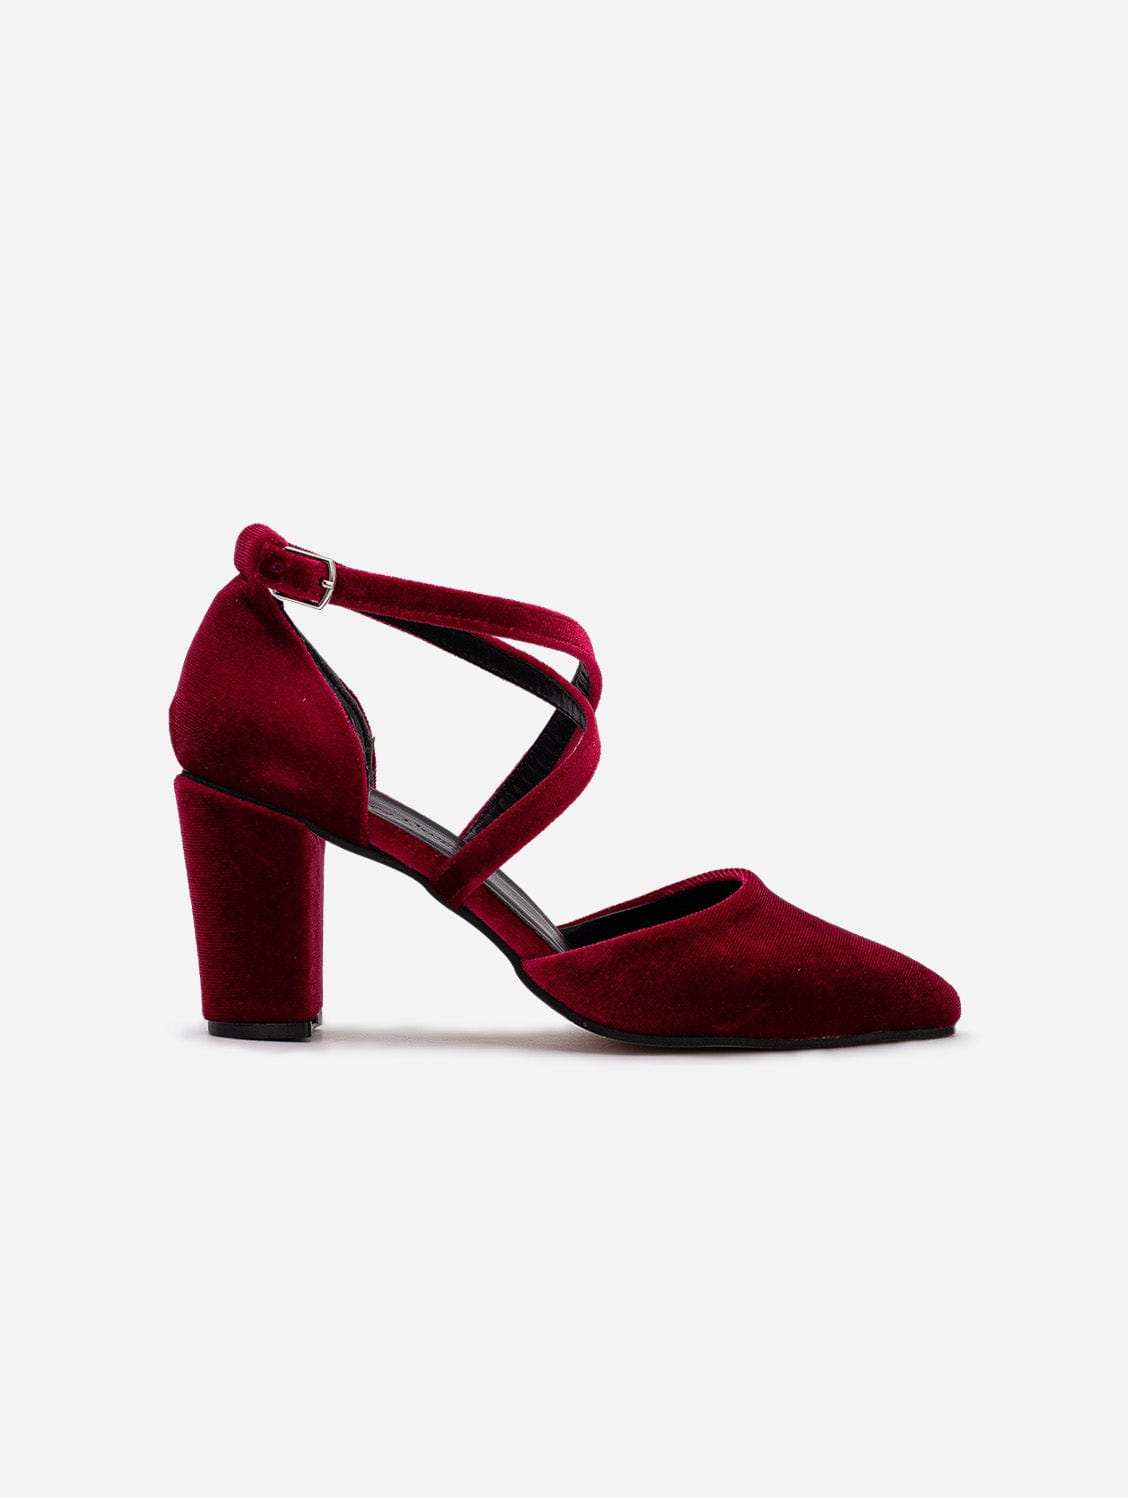 Prologue Shoes Sina - Dark Red Velvet Heels, Burgundy Velvet Shoes